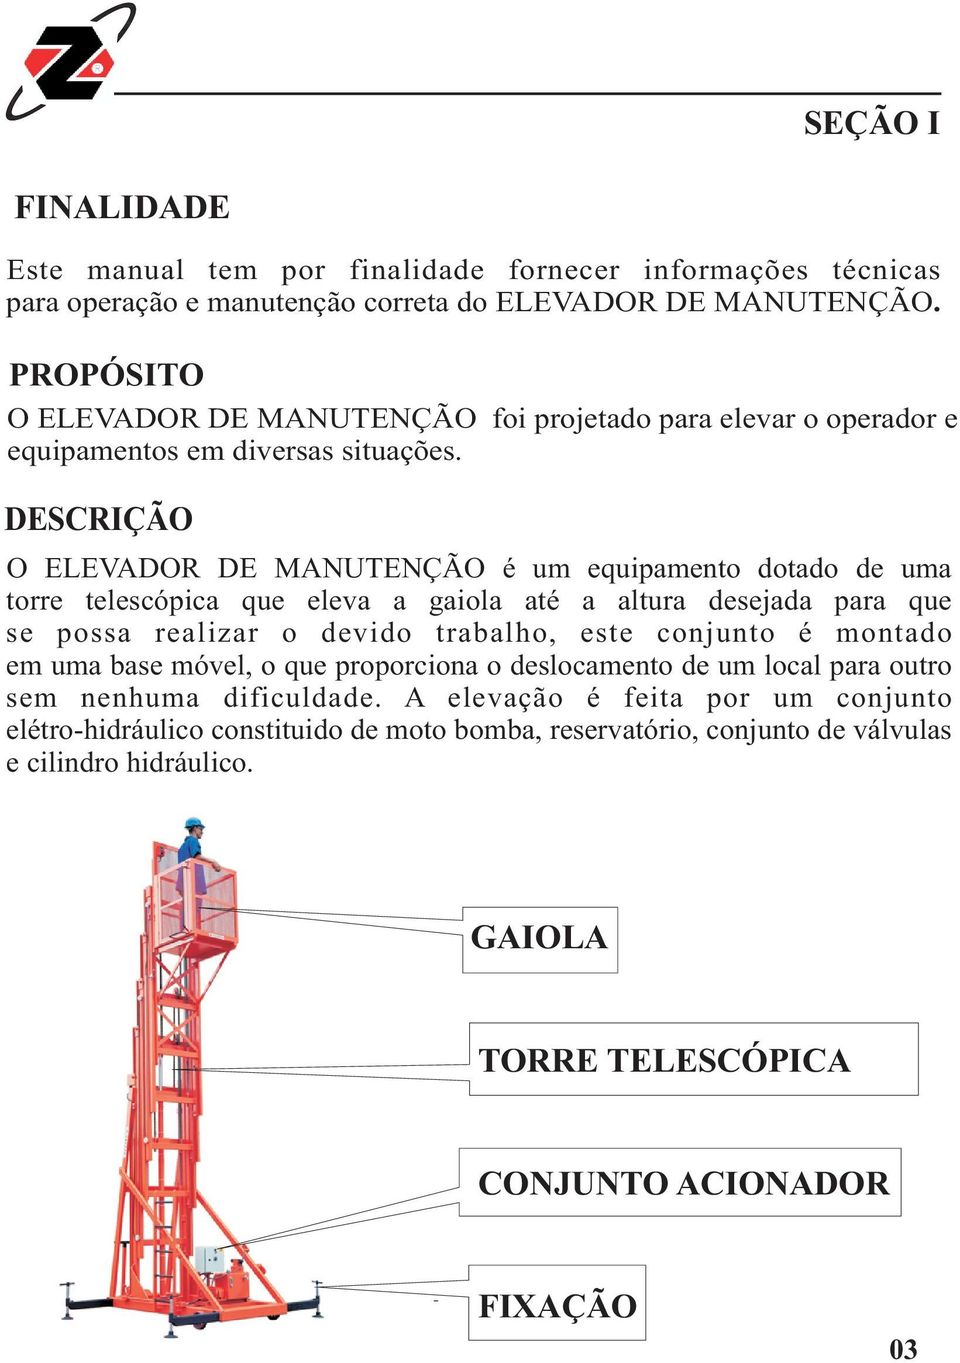 DESCRIÇÃO O ELEVADOR DE MANUTENÇÃO é um equipamento dotado de uma torre telescópica que eleva a gaiola até a altura desejada para que se possa realizar o devido trabalho, este conjunto